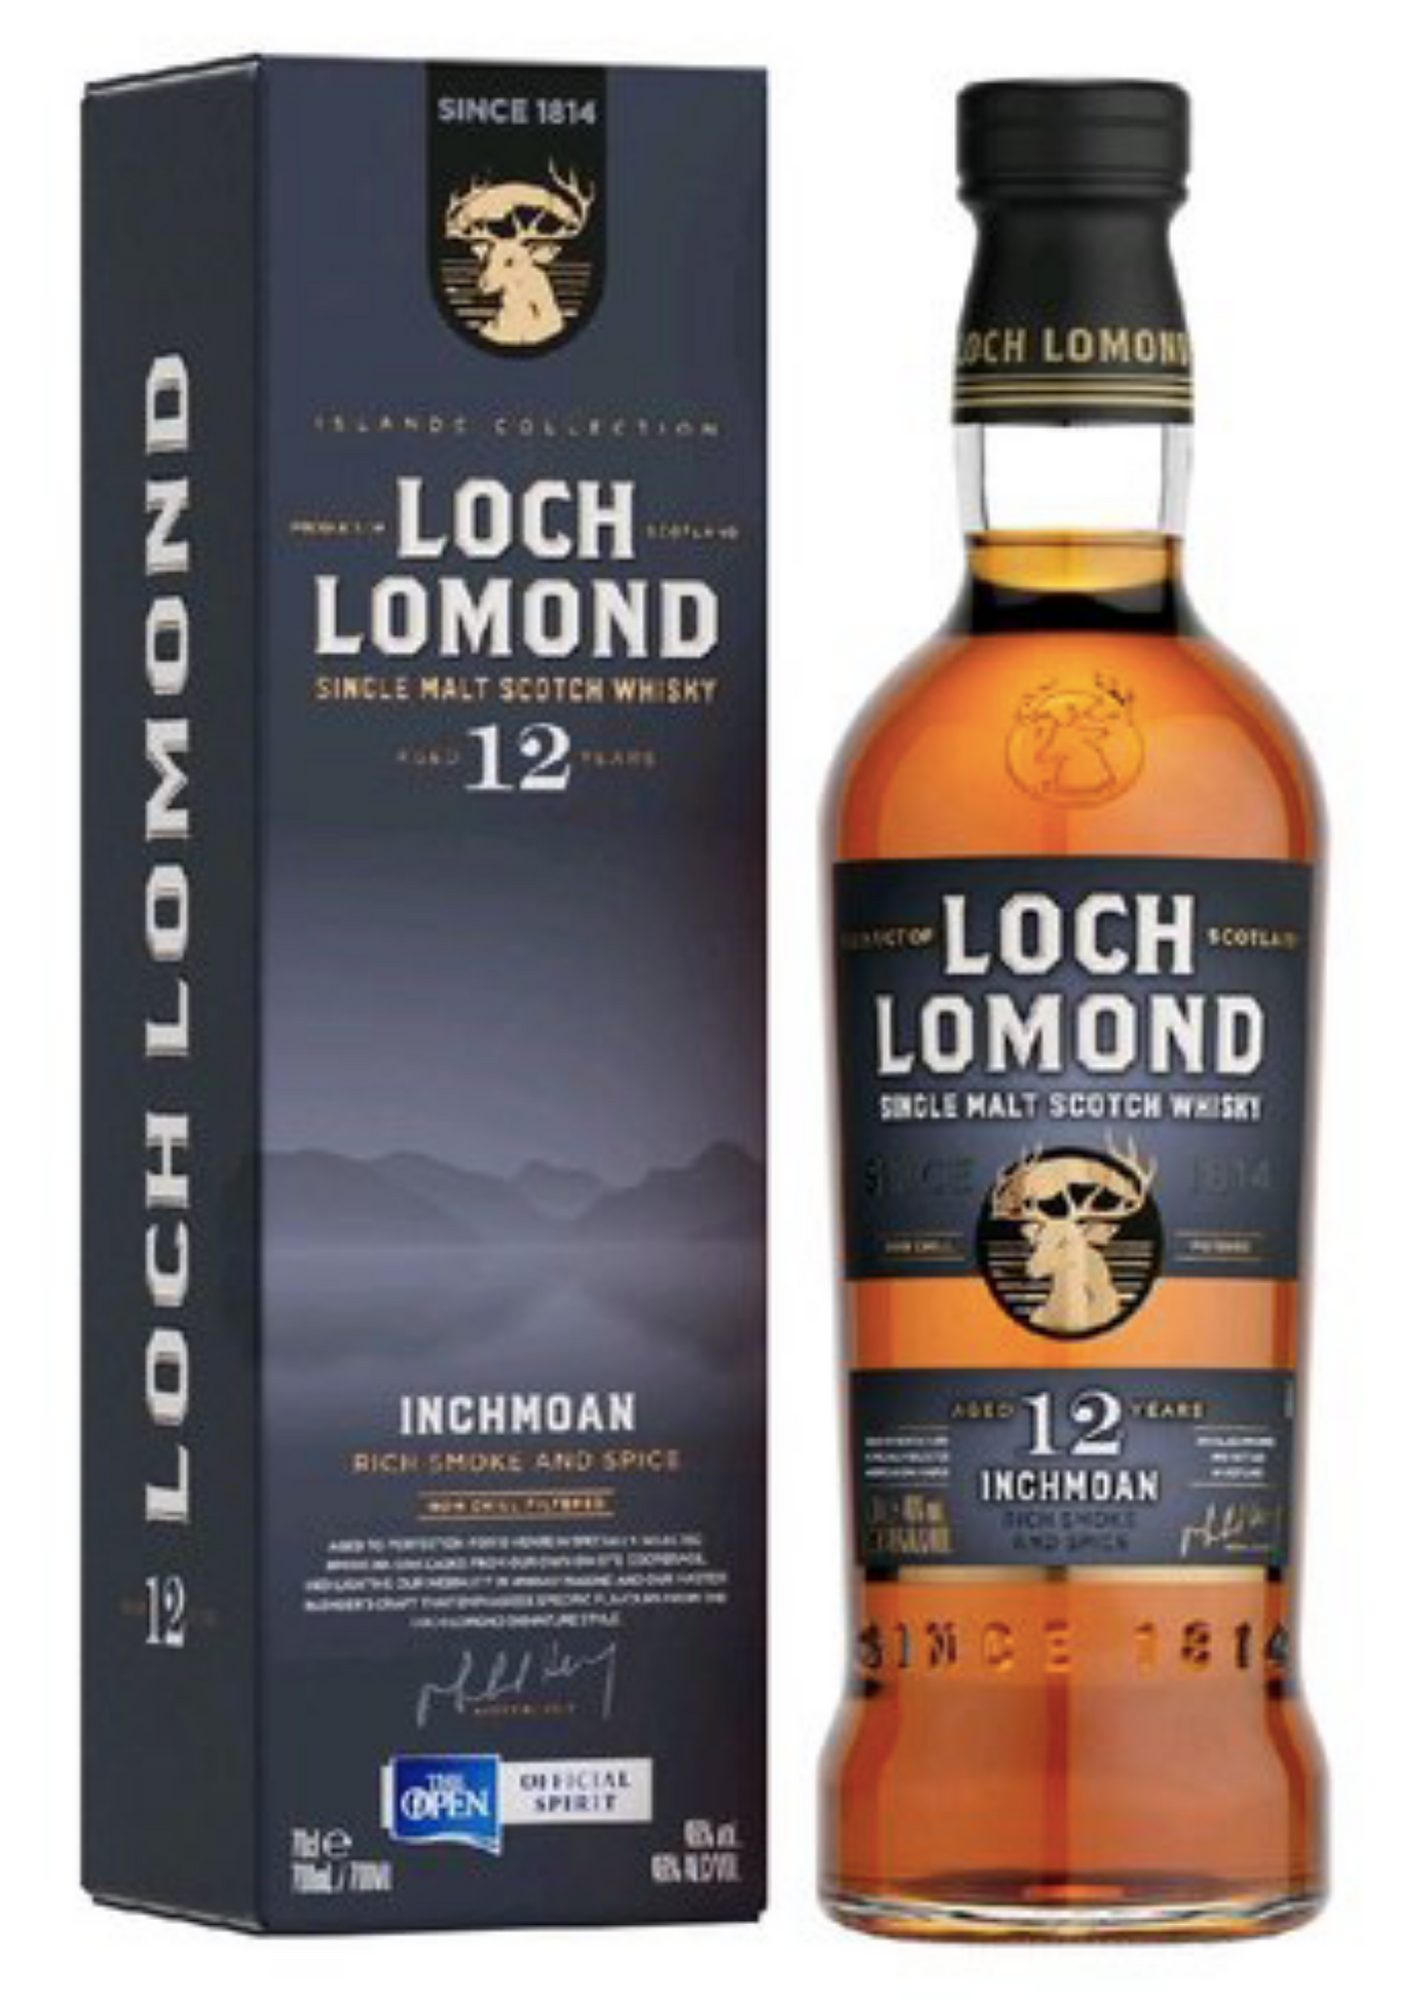 Loch Lomond Inchmoan Rich Smoke & Spice aged 12 years 46% 0,7 l (karton)